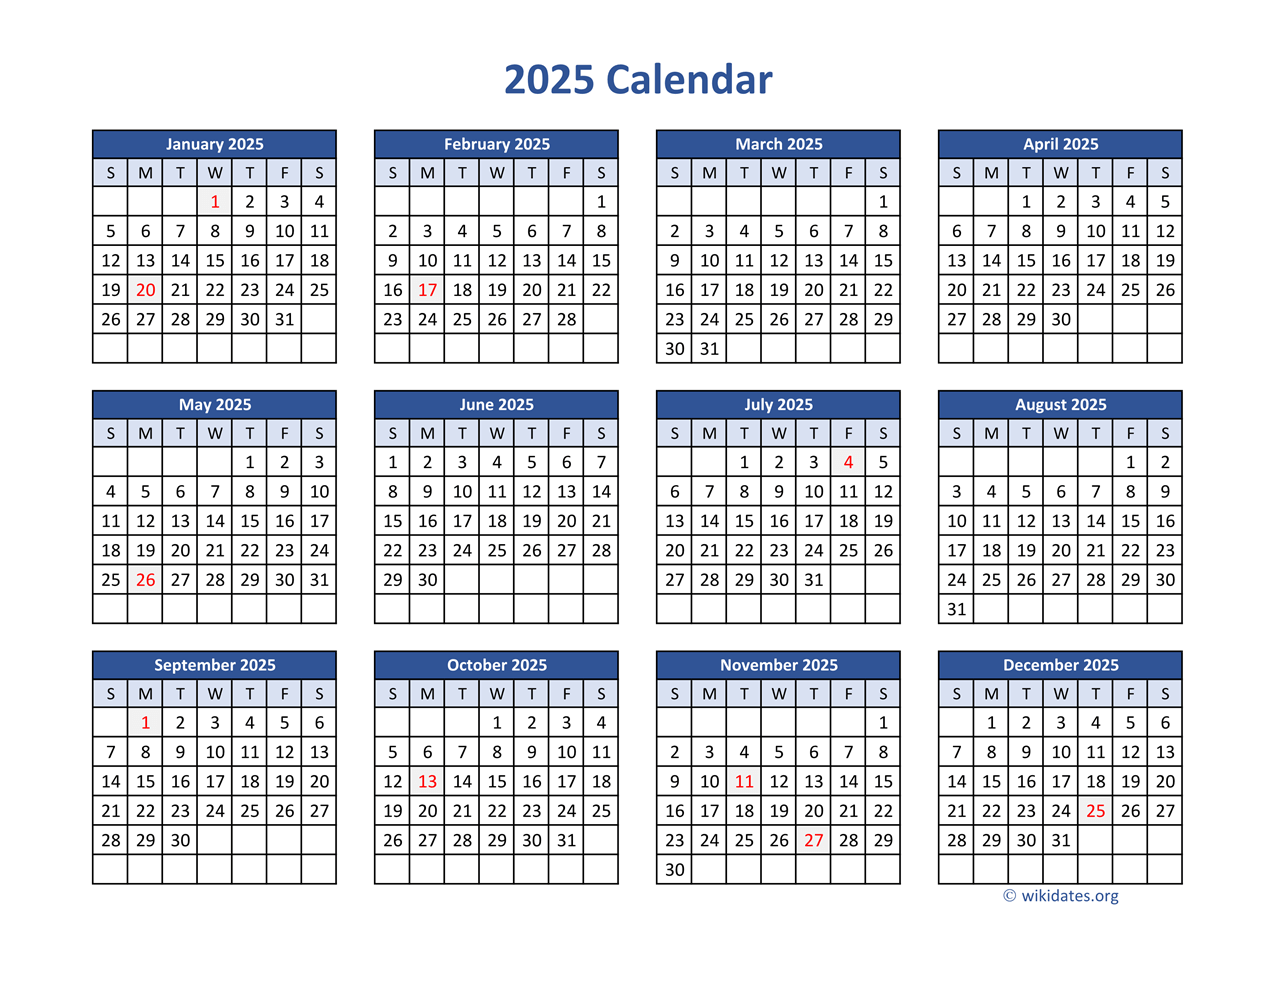 2025 Calendar in PDF WikiDates org